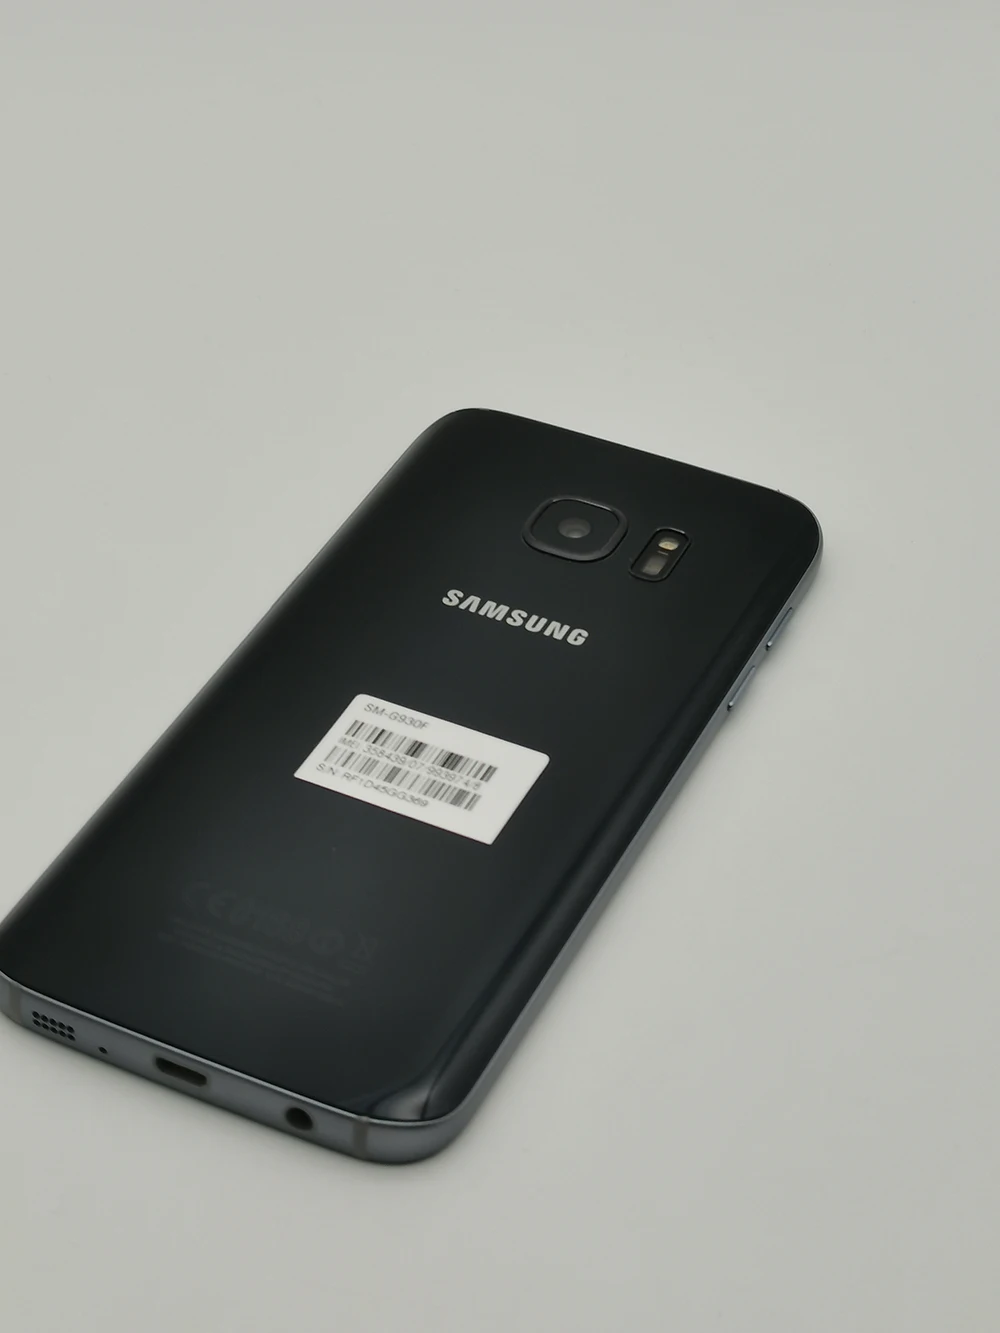 Samsung Galaxy S7 G9300 Восстановленный-Оригинальный Разблокированный Смартфон G930FD G930W8 5,2 